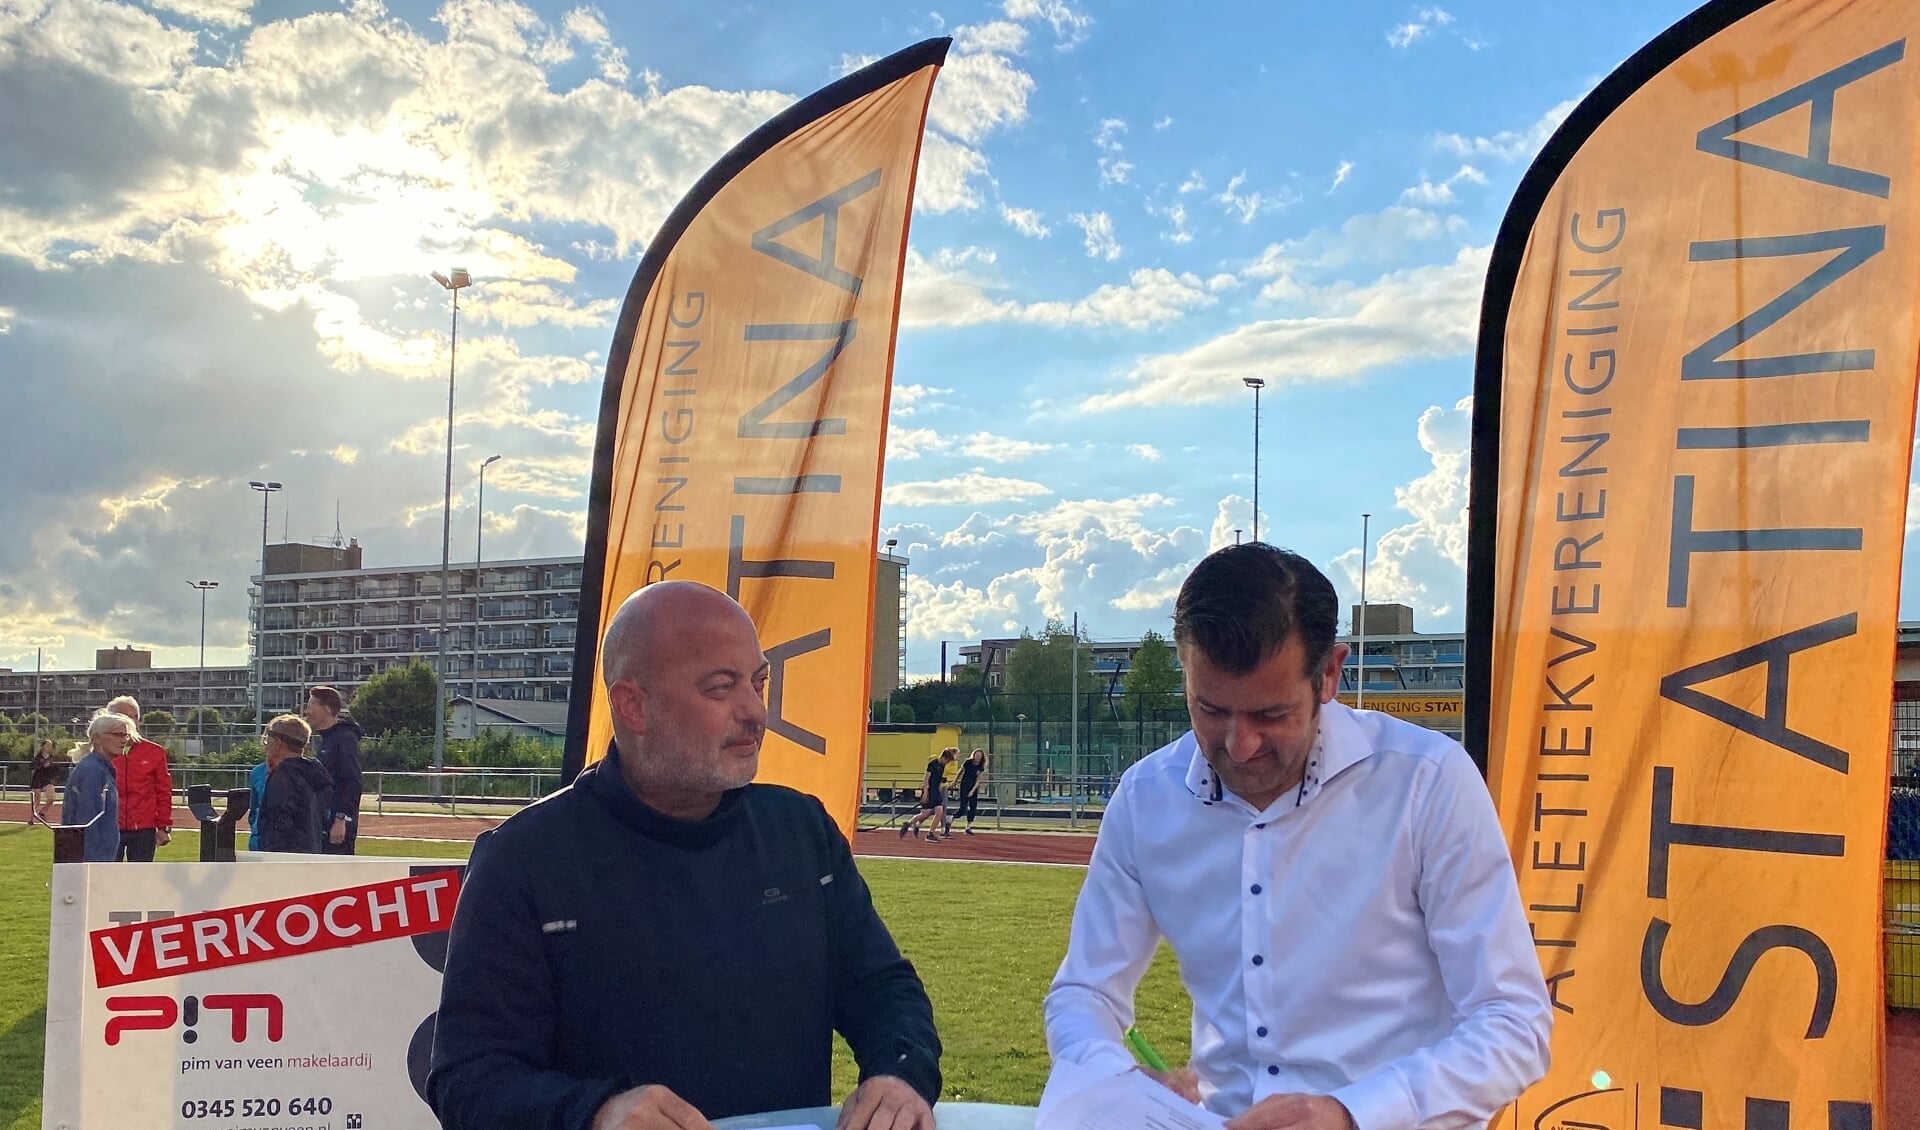 • De sponsorovereenkomst tussen atletiekvereniging Statina en Pim van Veen Makelaardij werd op de atletiekbaan ondertekend. 